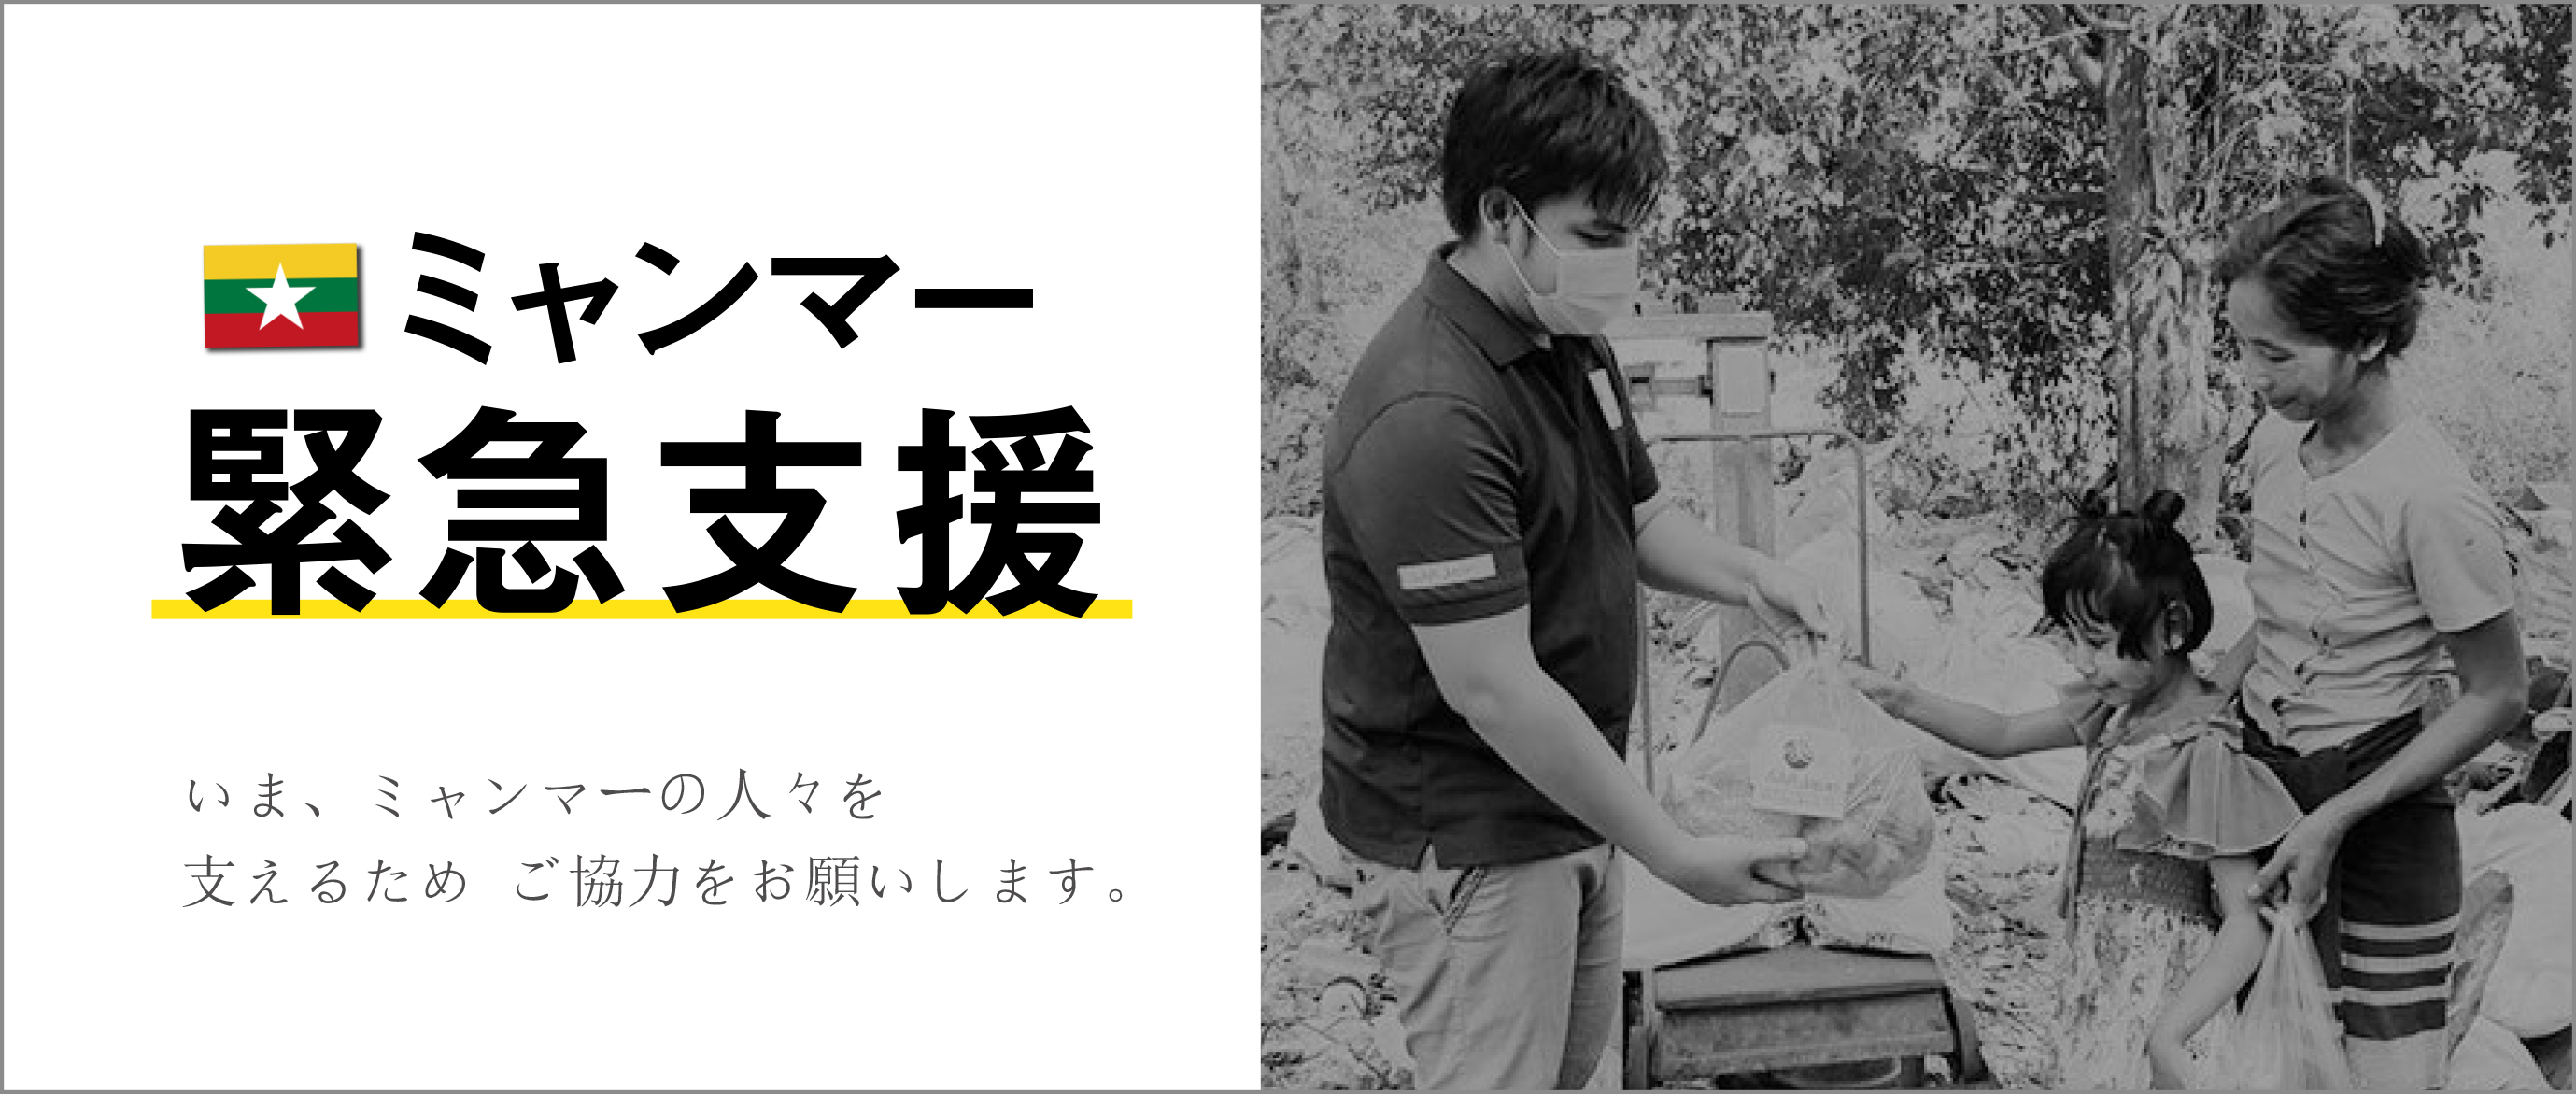 ミャンマーの障がい者や困窮世帯に緊急支援 r Japan 特定非営利活動法人 難民を助ける会のプレスリリース